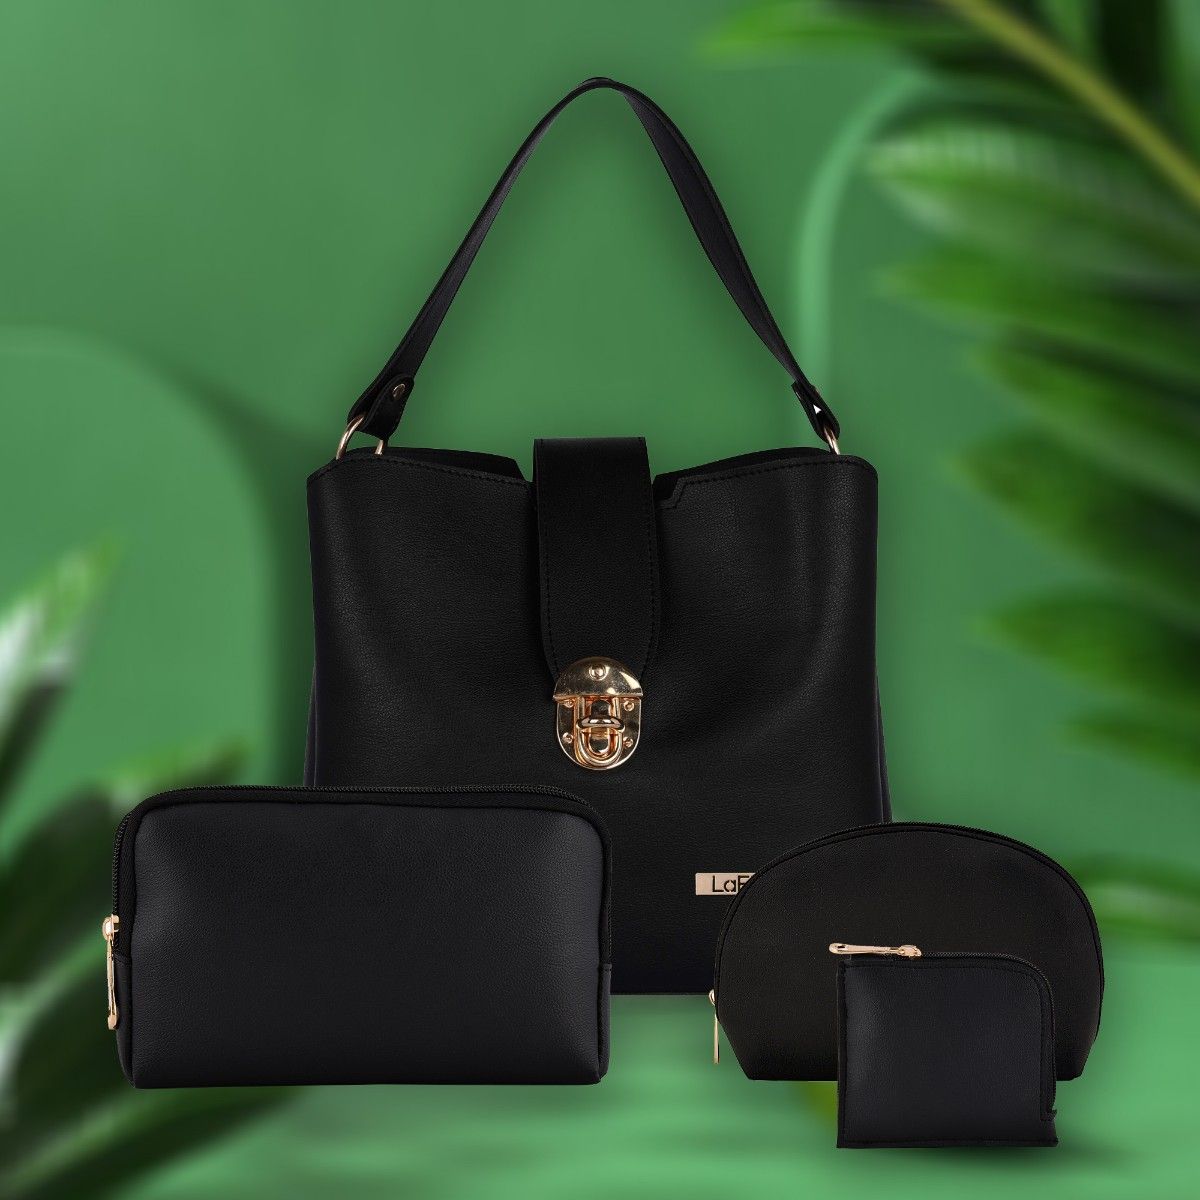 Goth girl purse & wallet set. Unique & adorable y2k - Depop